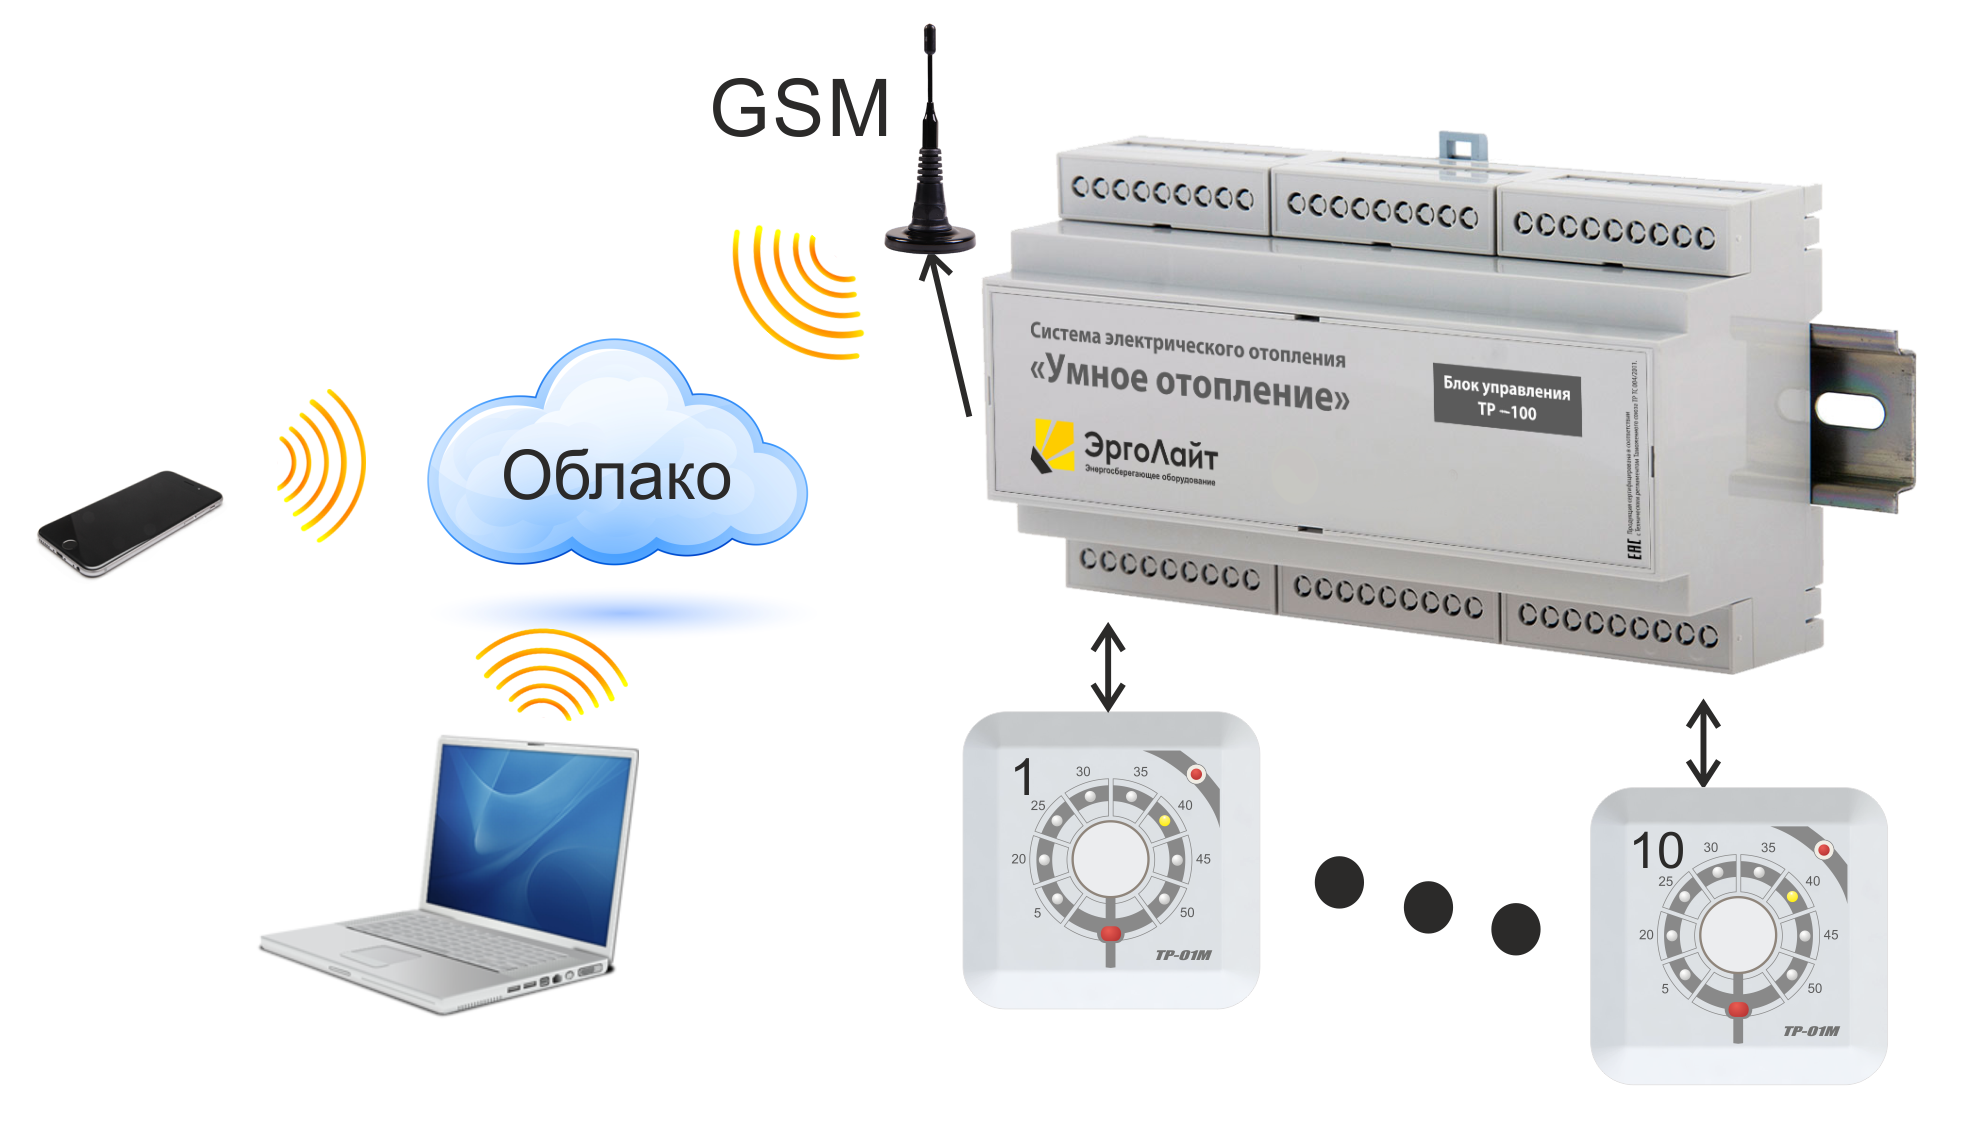 Gsm модуль для отопления. GSM модуль управления котлом. Контроллер GSM для отопления. Контроллер для твердотопливного котла с GSM модулем. GSM пульт управления котлом отопления.